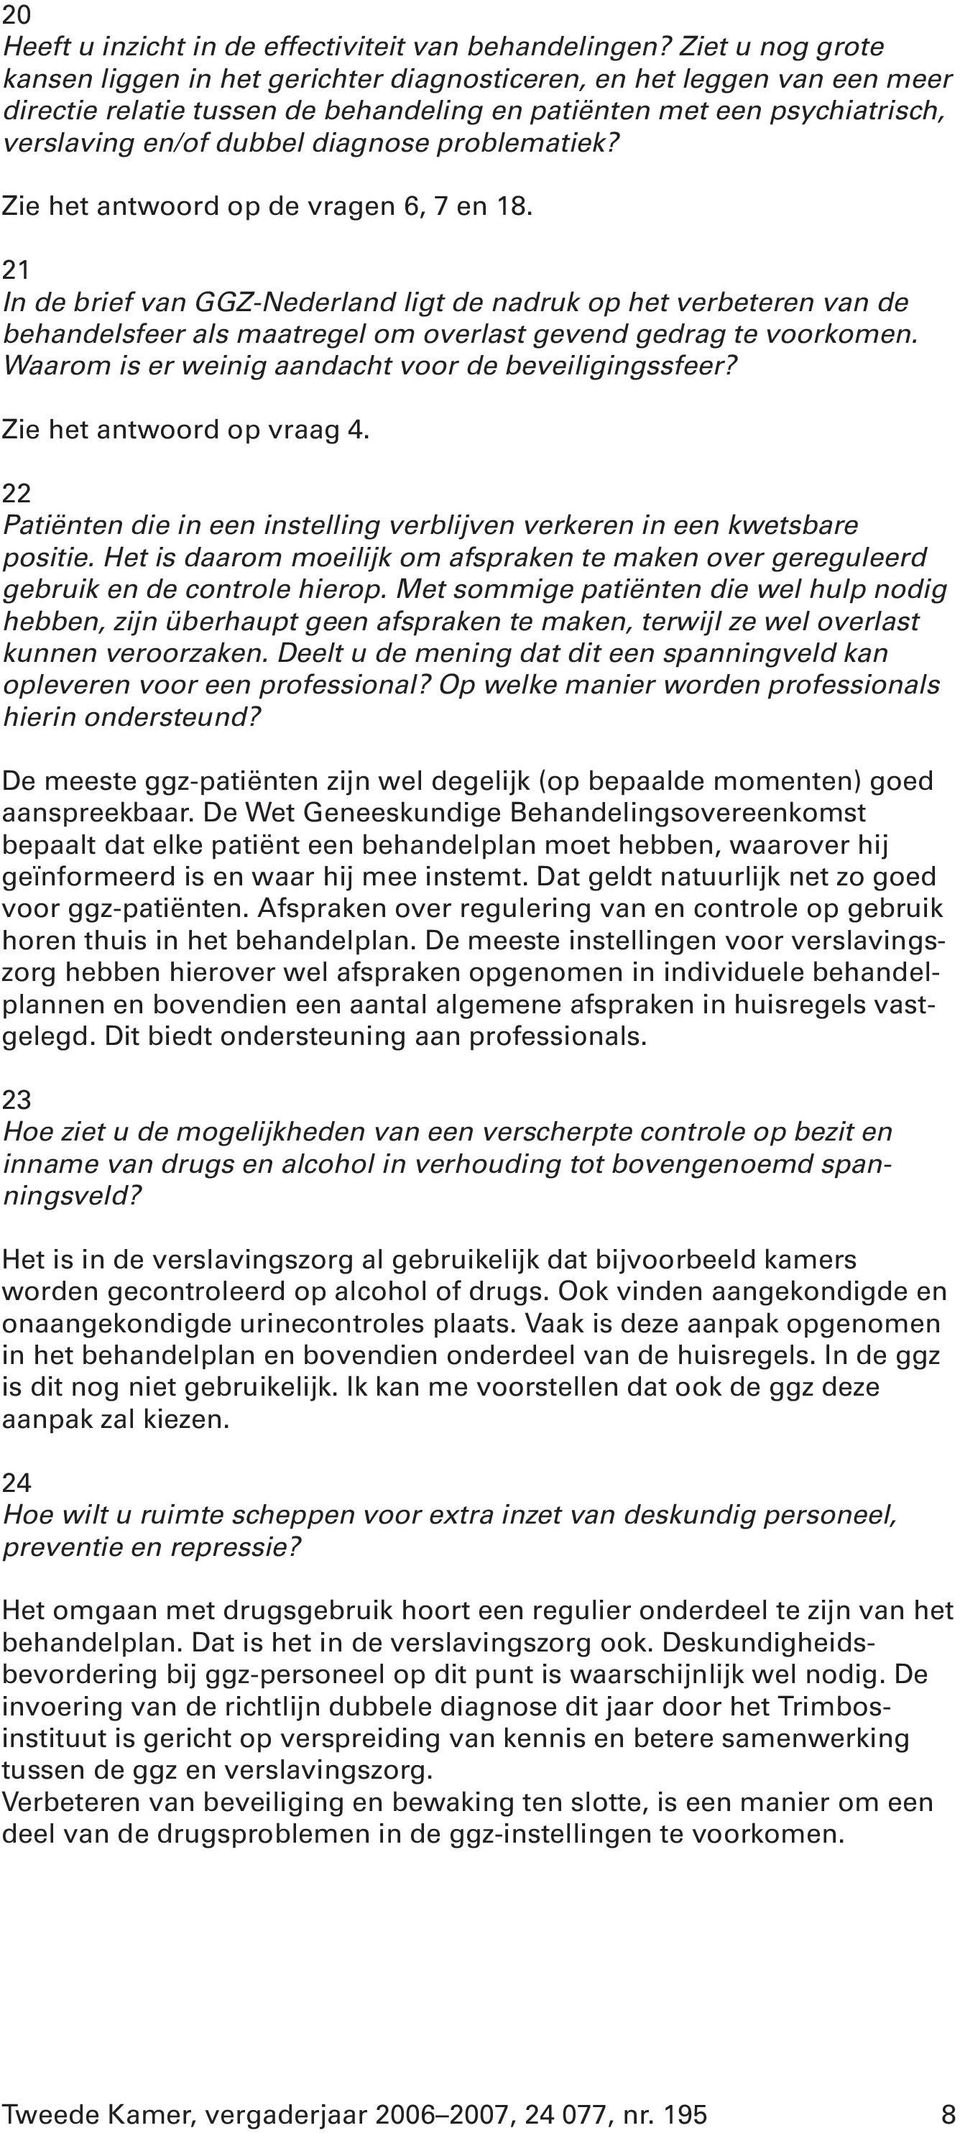 problematiek? Zie het antwoord op de vragen 6, 7 en 18. 21 In de brief van GGZ-Nederland ligt de nadruk op het verbeteren van de behandelsfeer als maatregel om overlast gevend gedrag te voorkomen.